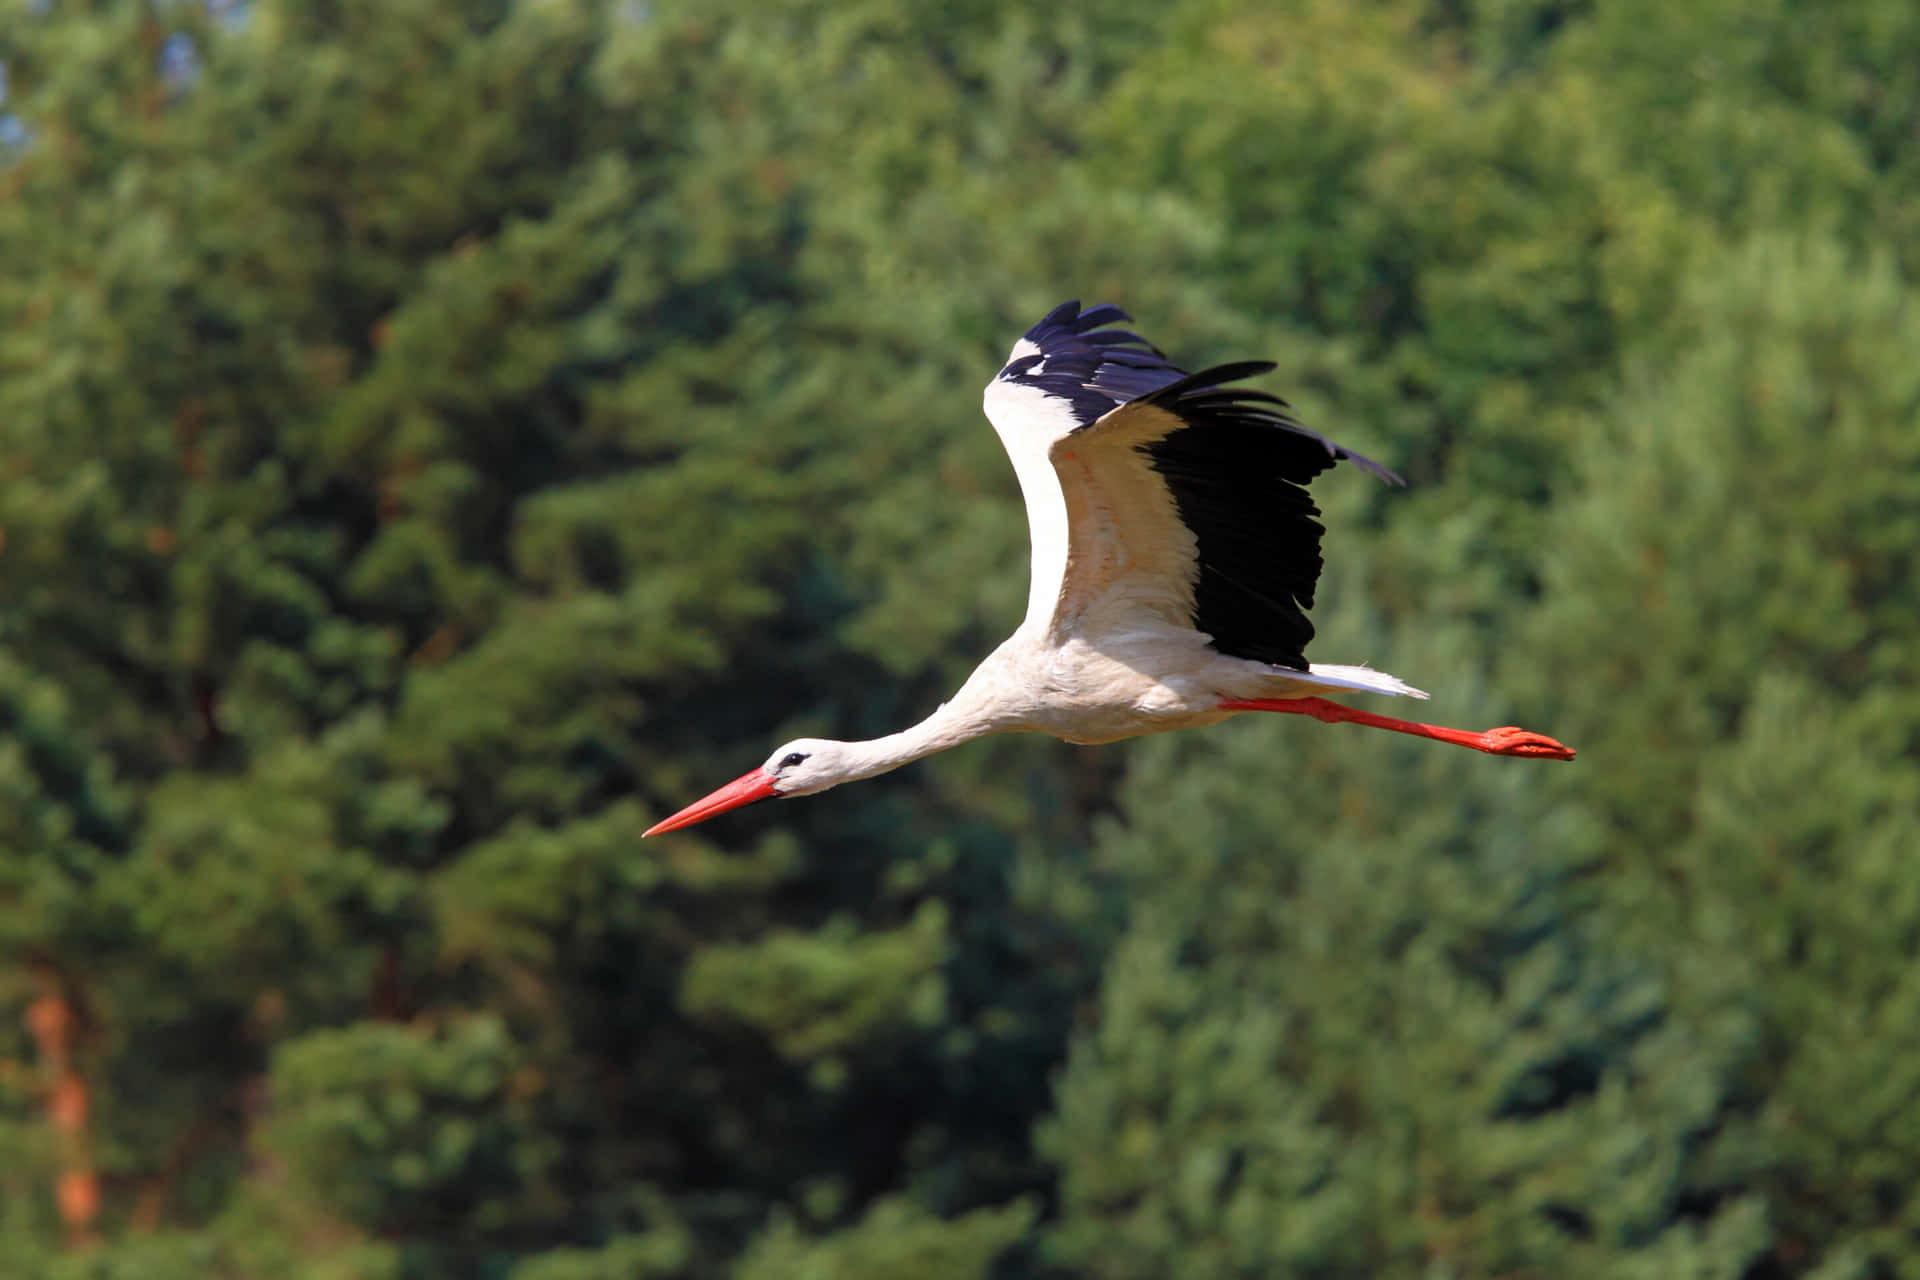 Majestic Stork In Flight.jpg Wallpaper